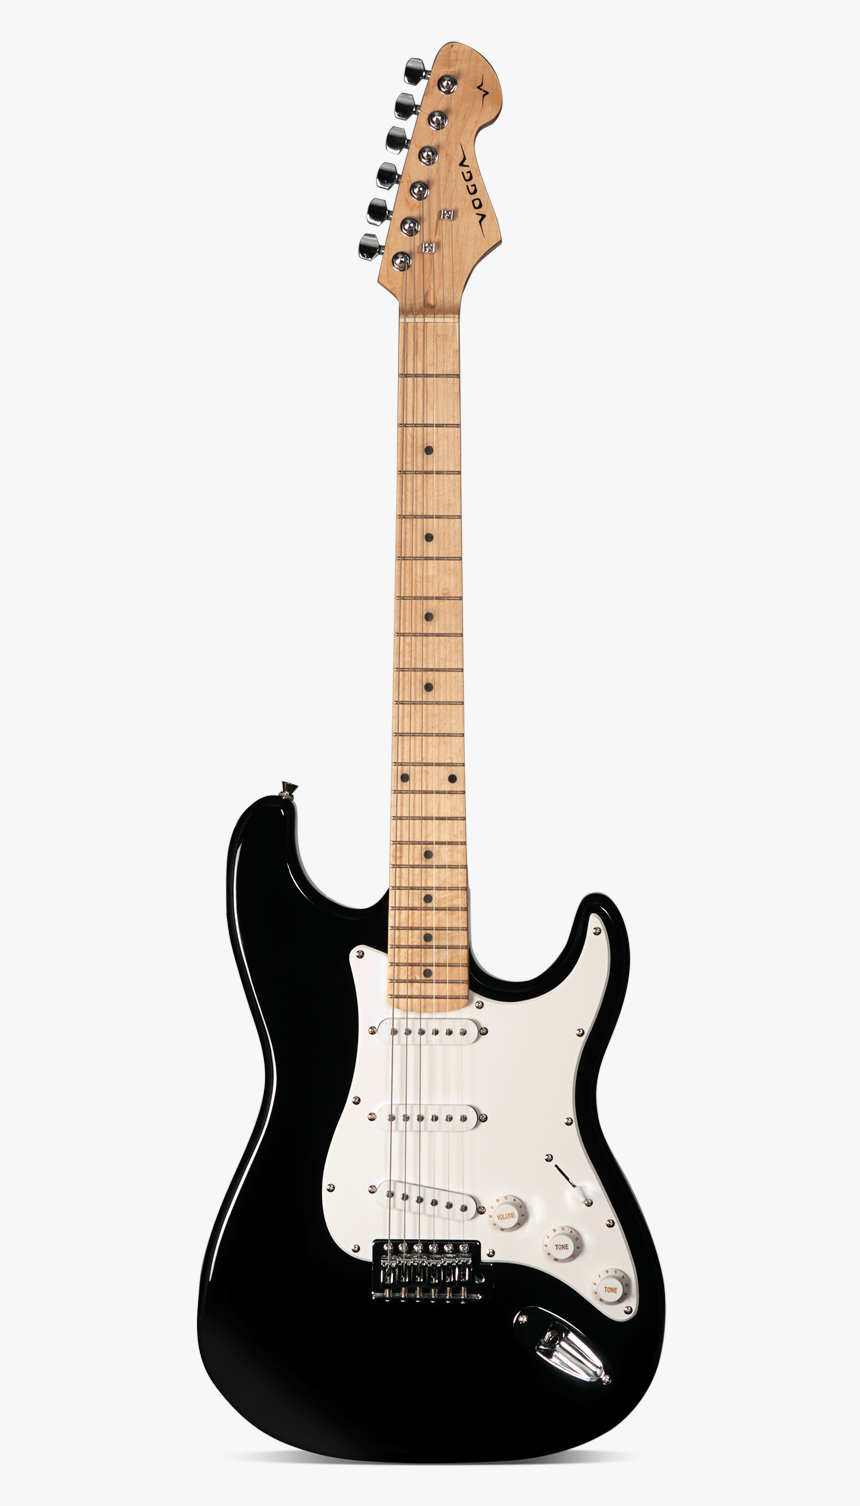 Fender Stratocaster Fender Squier Affinity Stratocaster Hd Png Download Kindpng